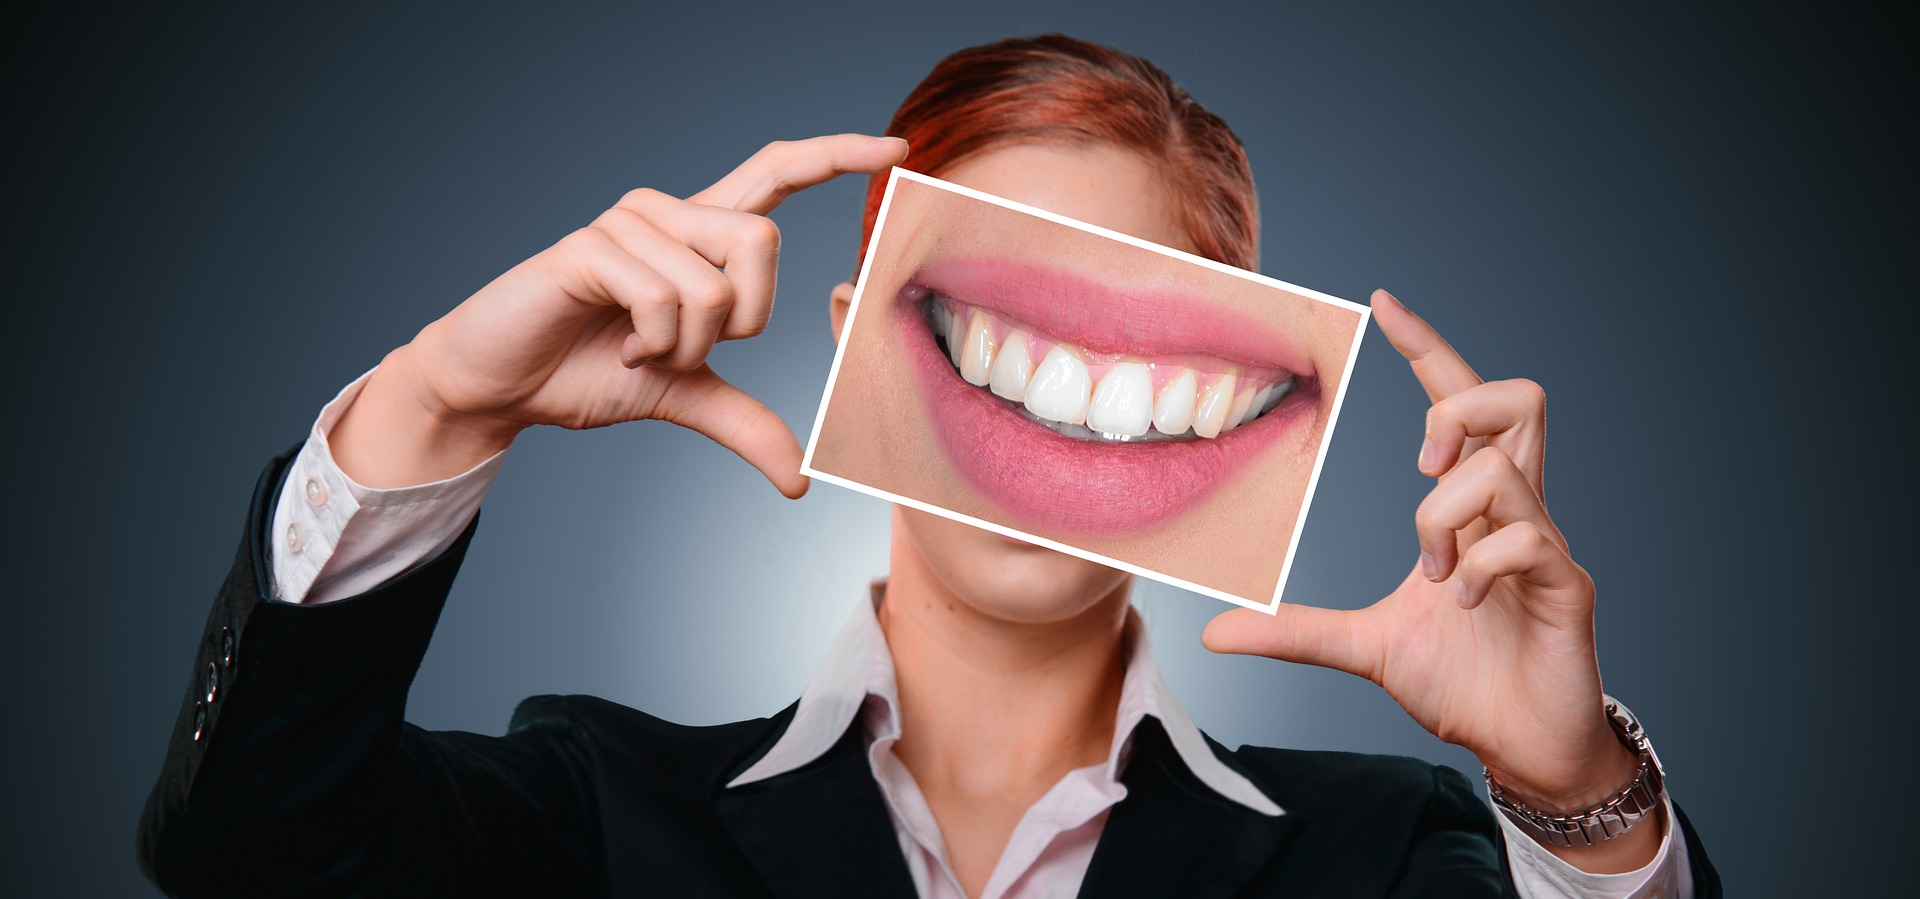 Carillas dentales - para qué sirven y qué tipos hay - Clínica dental Alicia  Felici